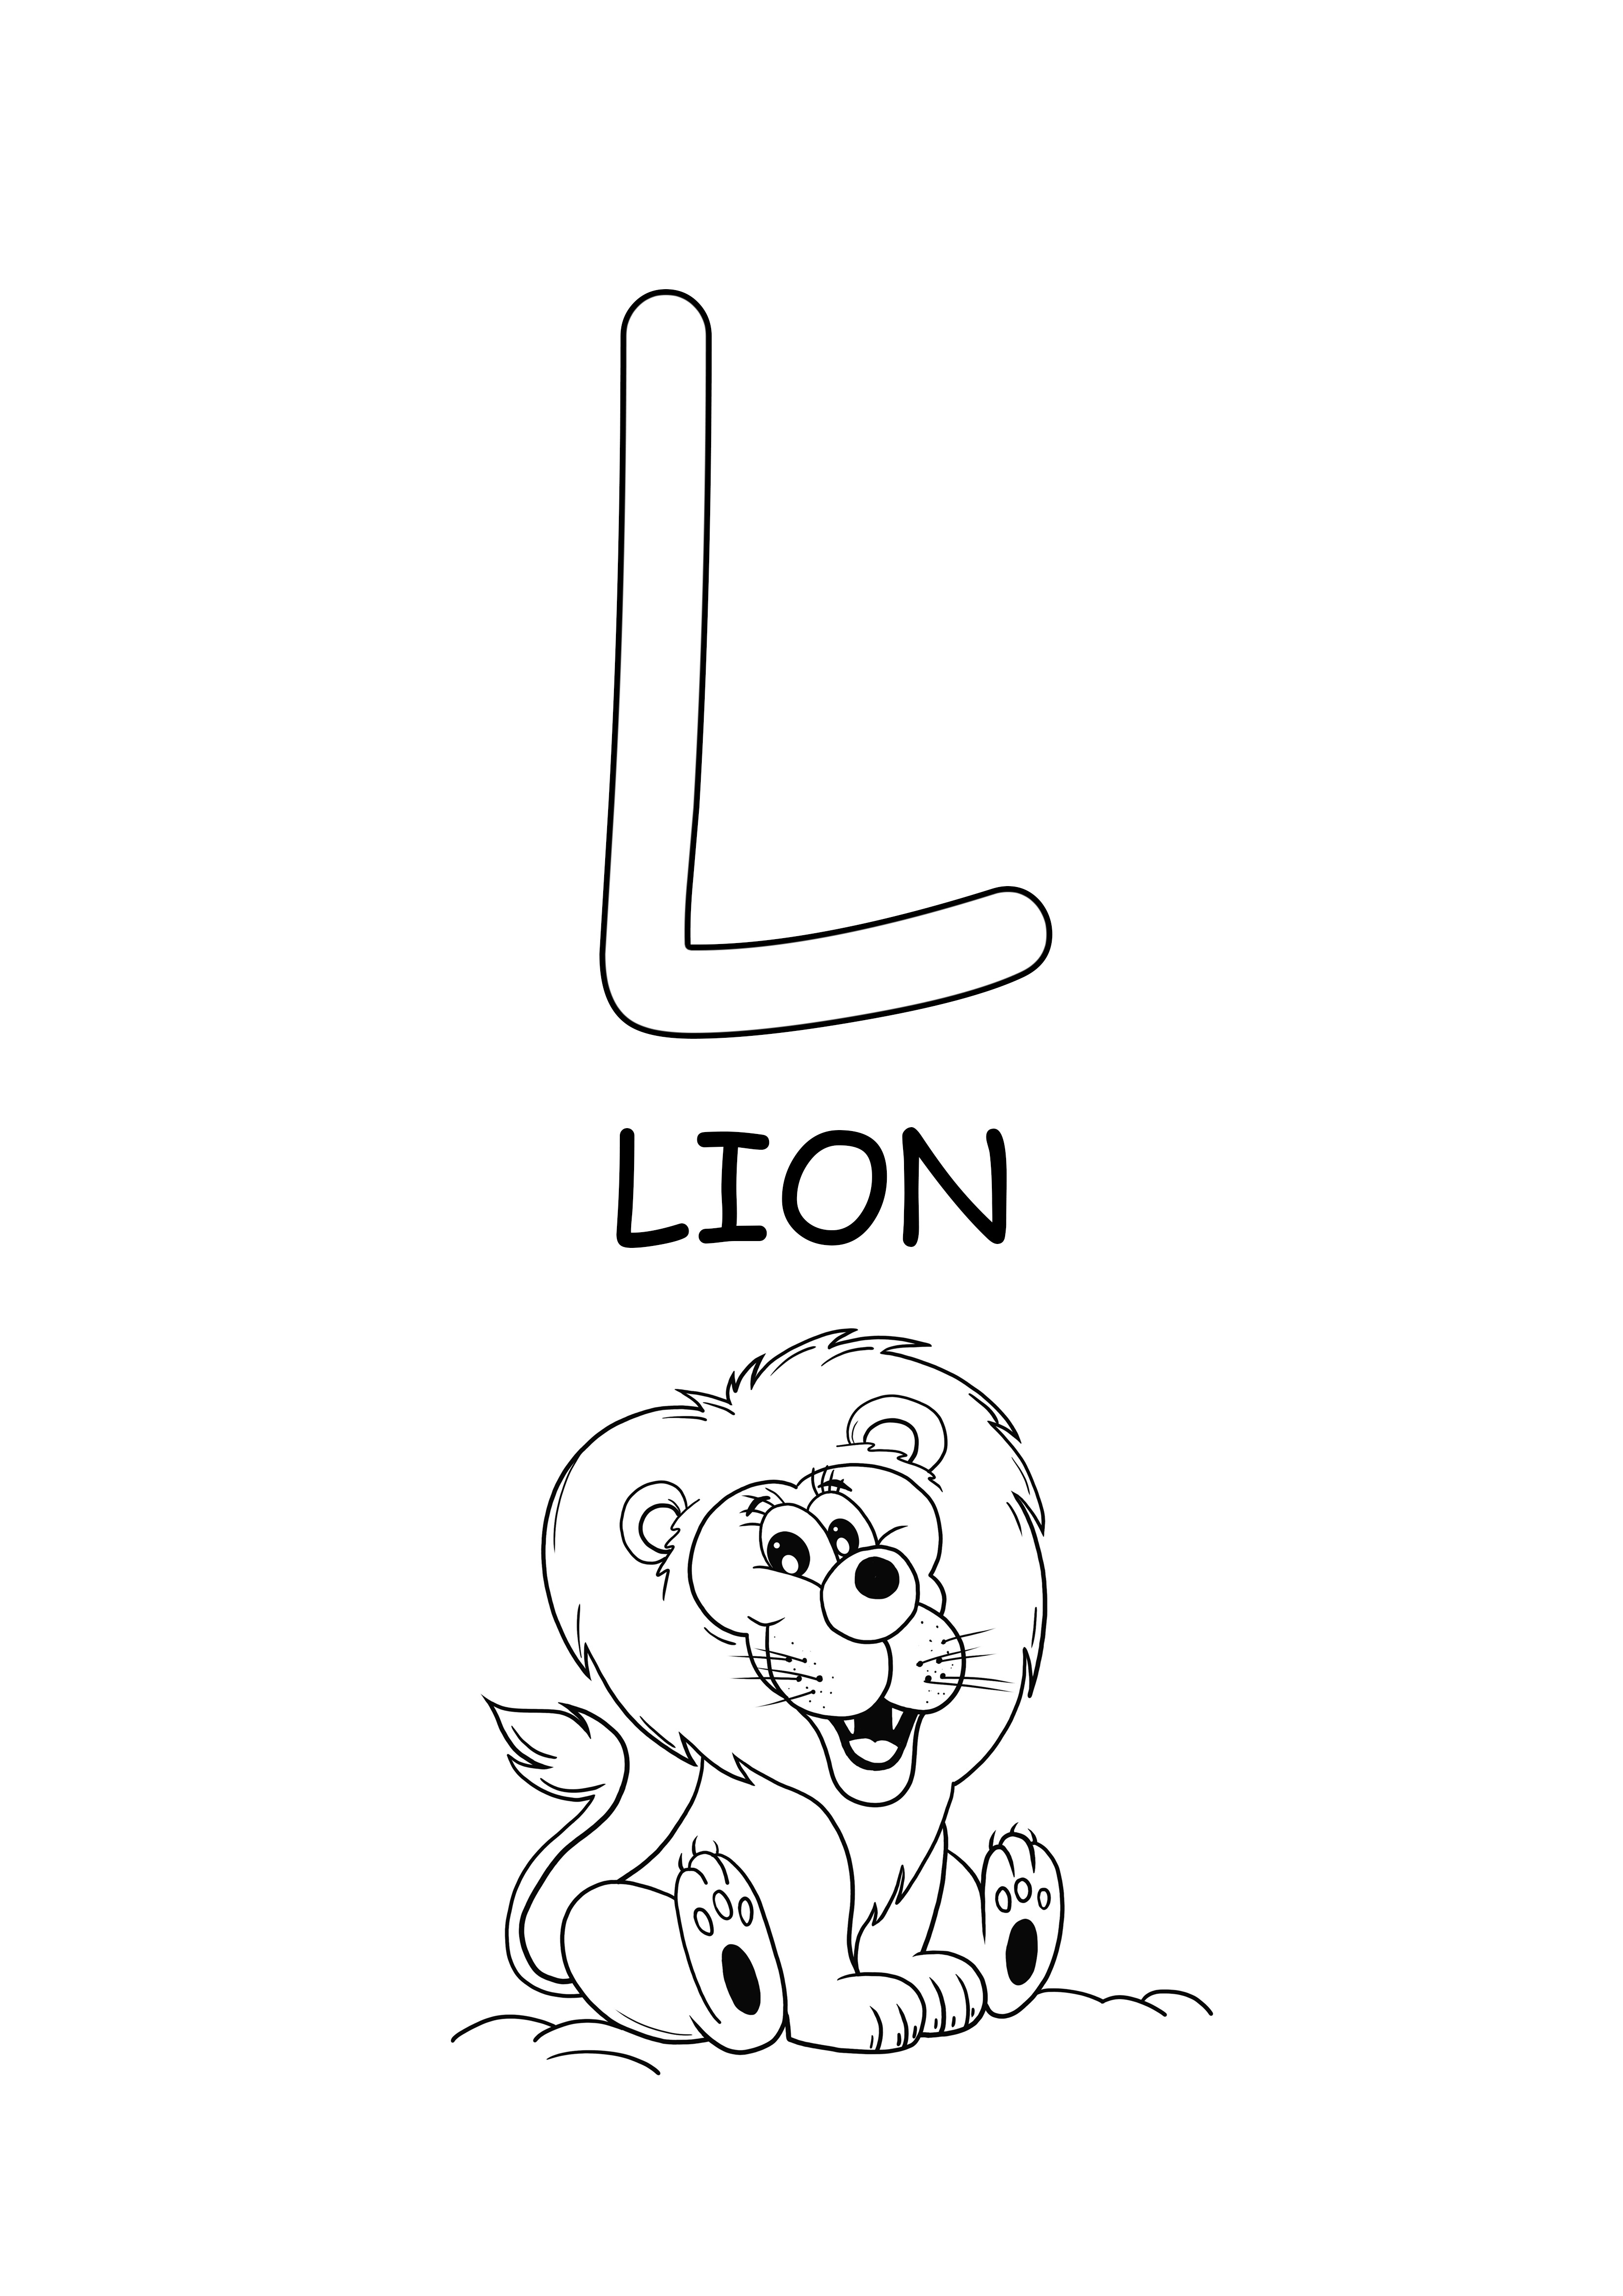 büyük harf word-lion to renk ve ücretsiz baskı